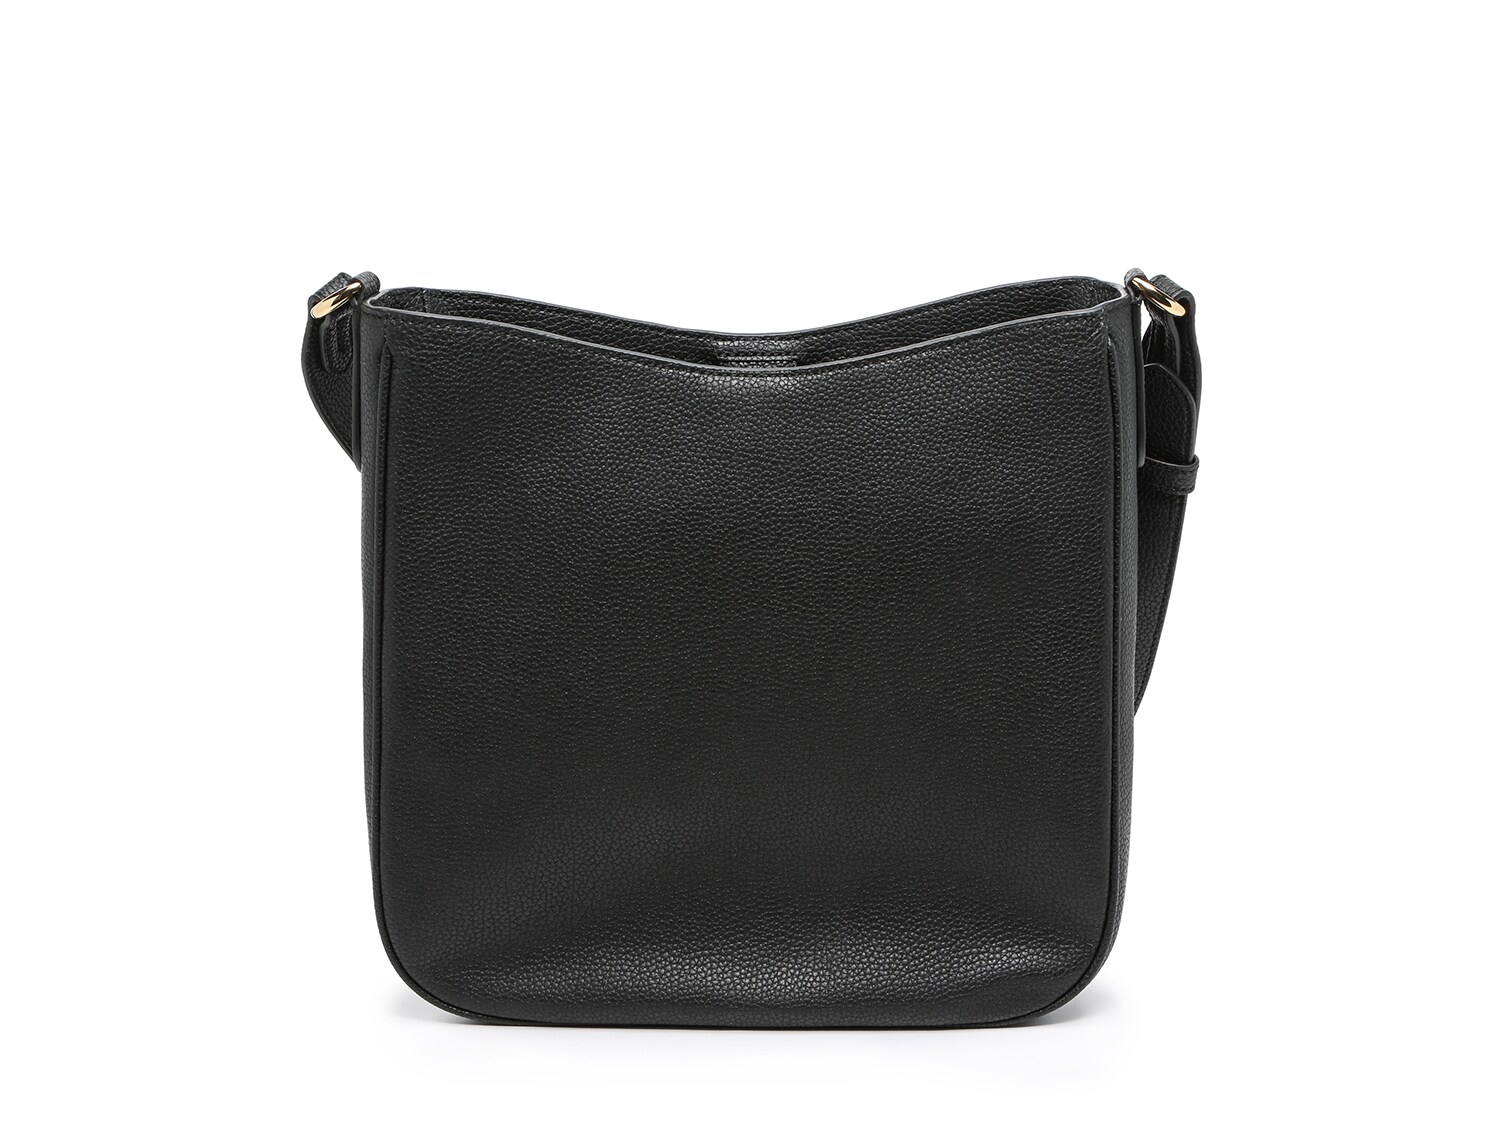 Lauren Ralph Lauren Cameryn 29 Leather Crossbody Bag | DSW